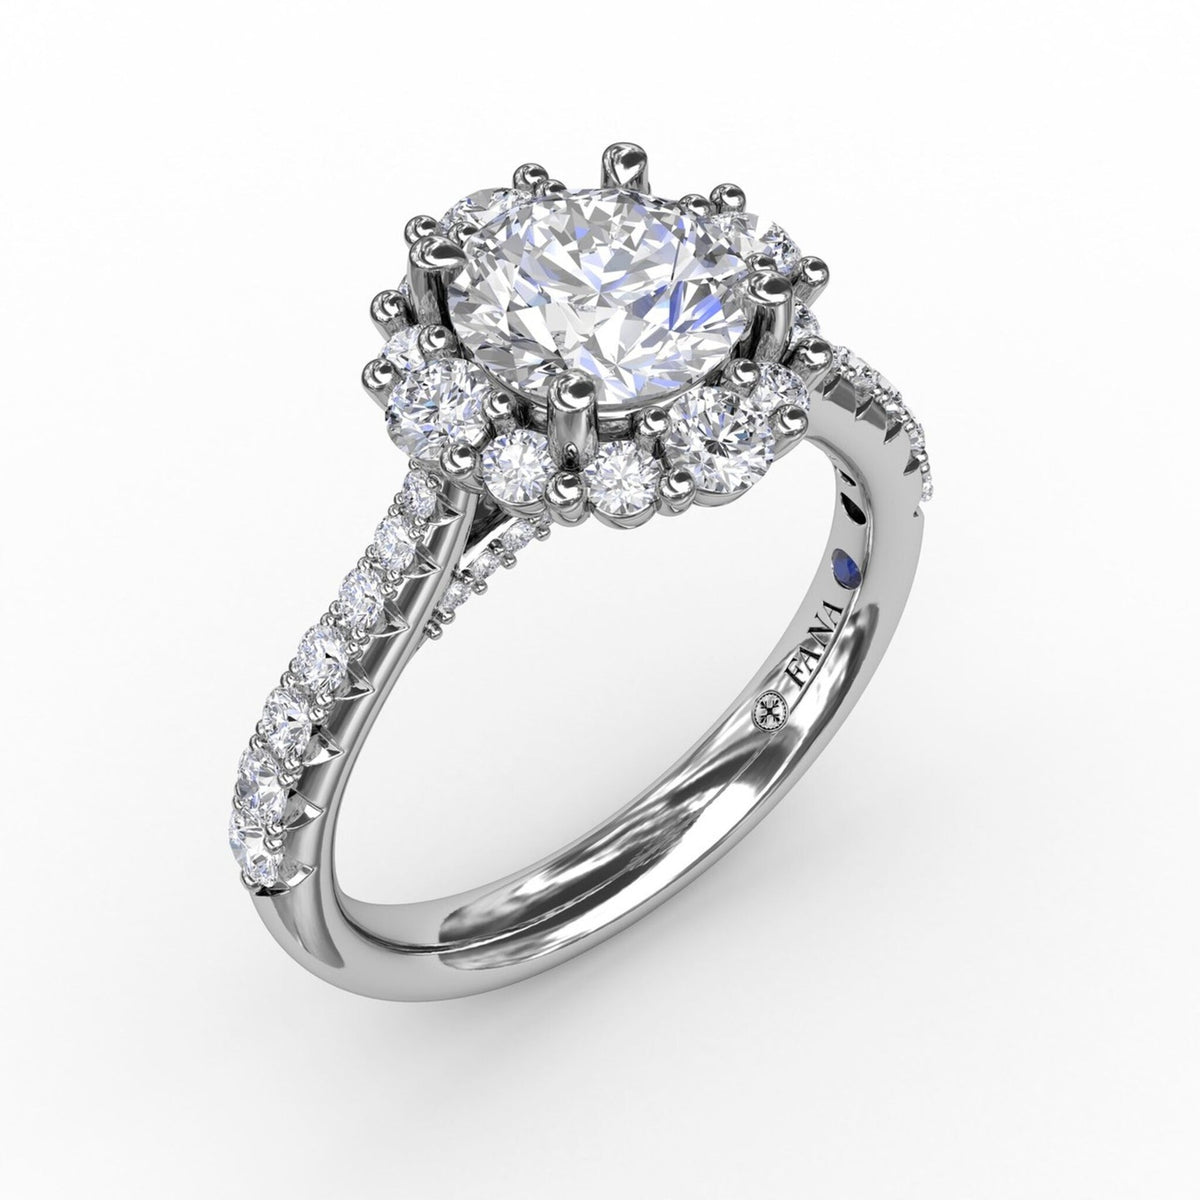 Elegant engagement ring with prong-set diamond halo